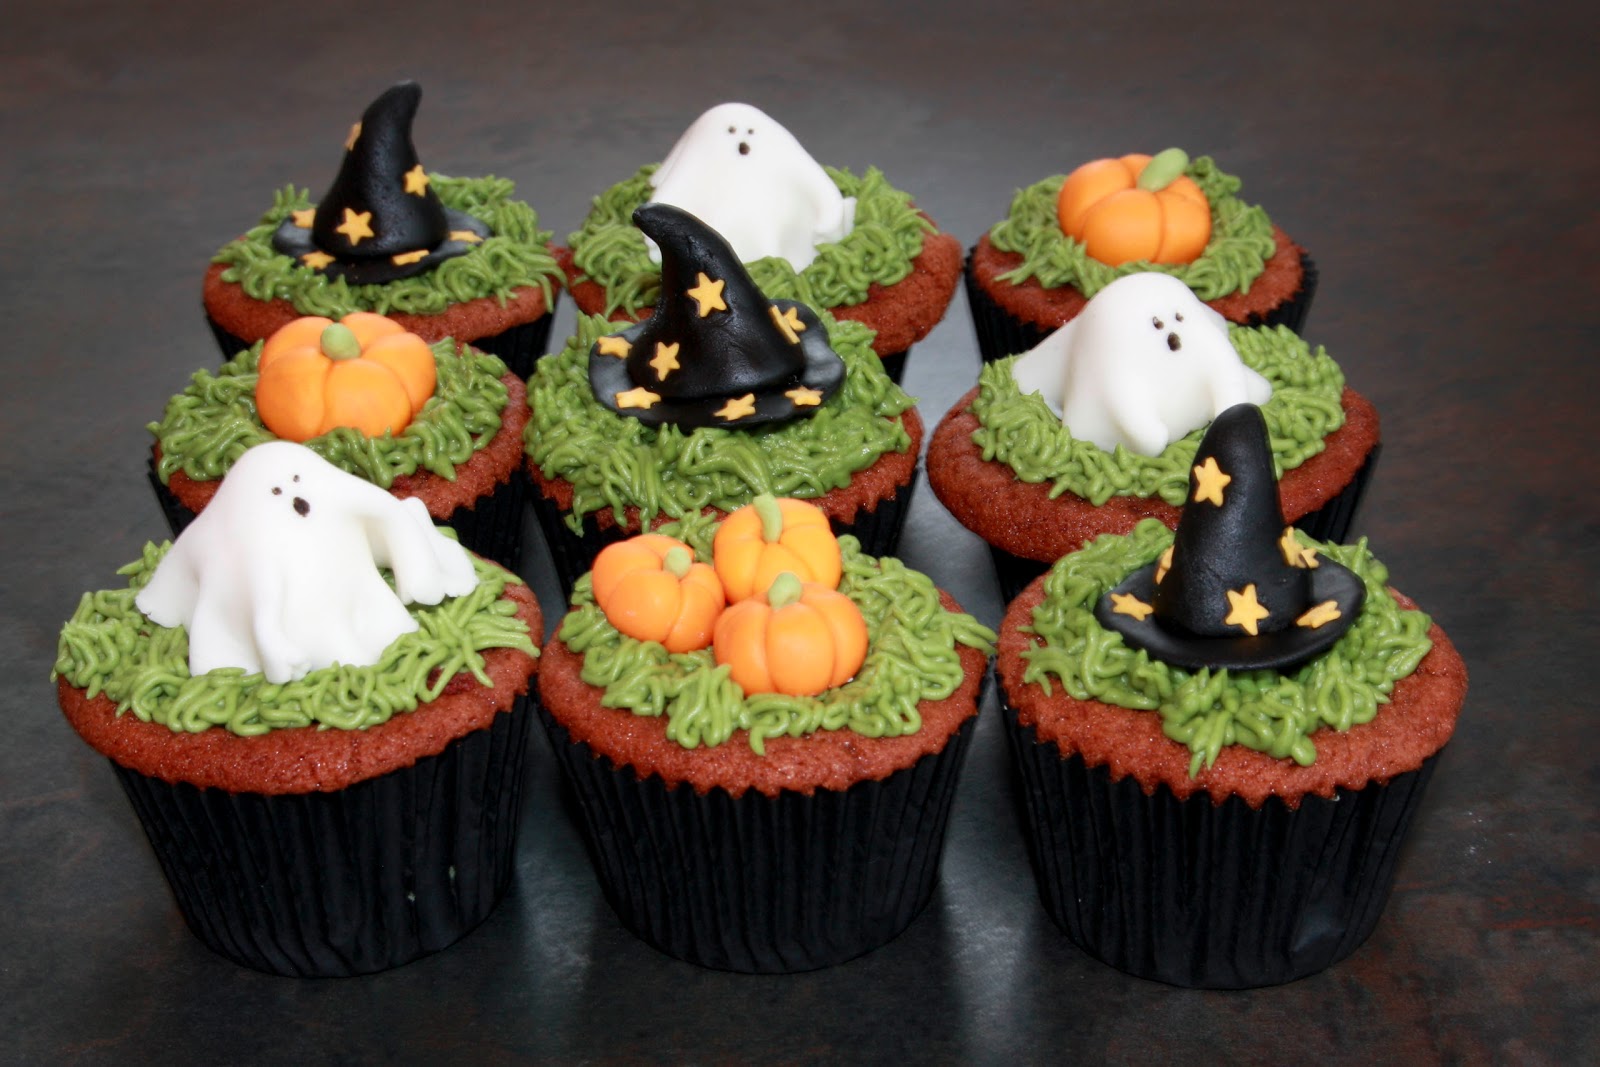 Halloween Red Velvet Cake & Cupcakes.